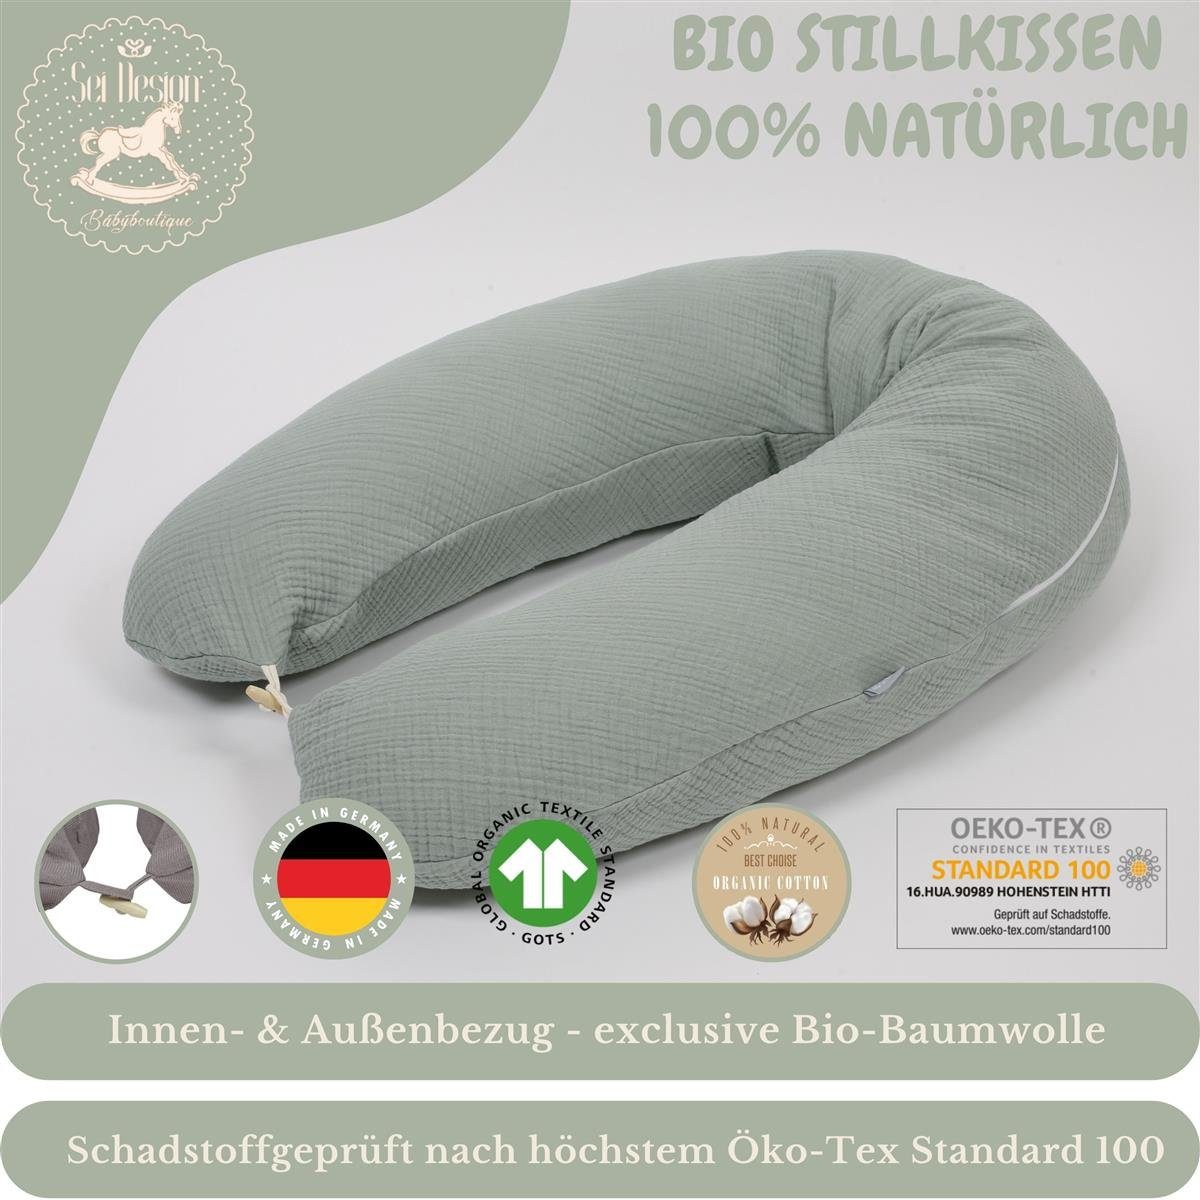 SEI Design + Baumwolle BIO Bezug, + Naturstillkissen Stillkissen Mint cm, BIO-Stillkissen Dark Kapok 190x30 Kissen